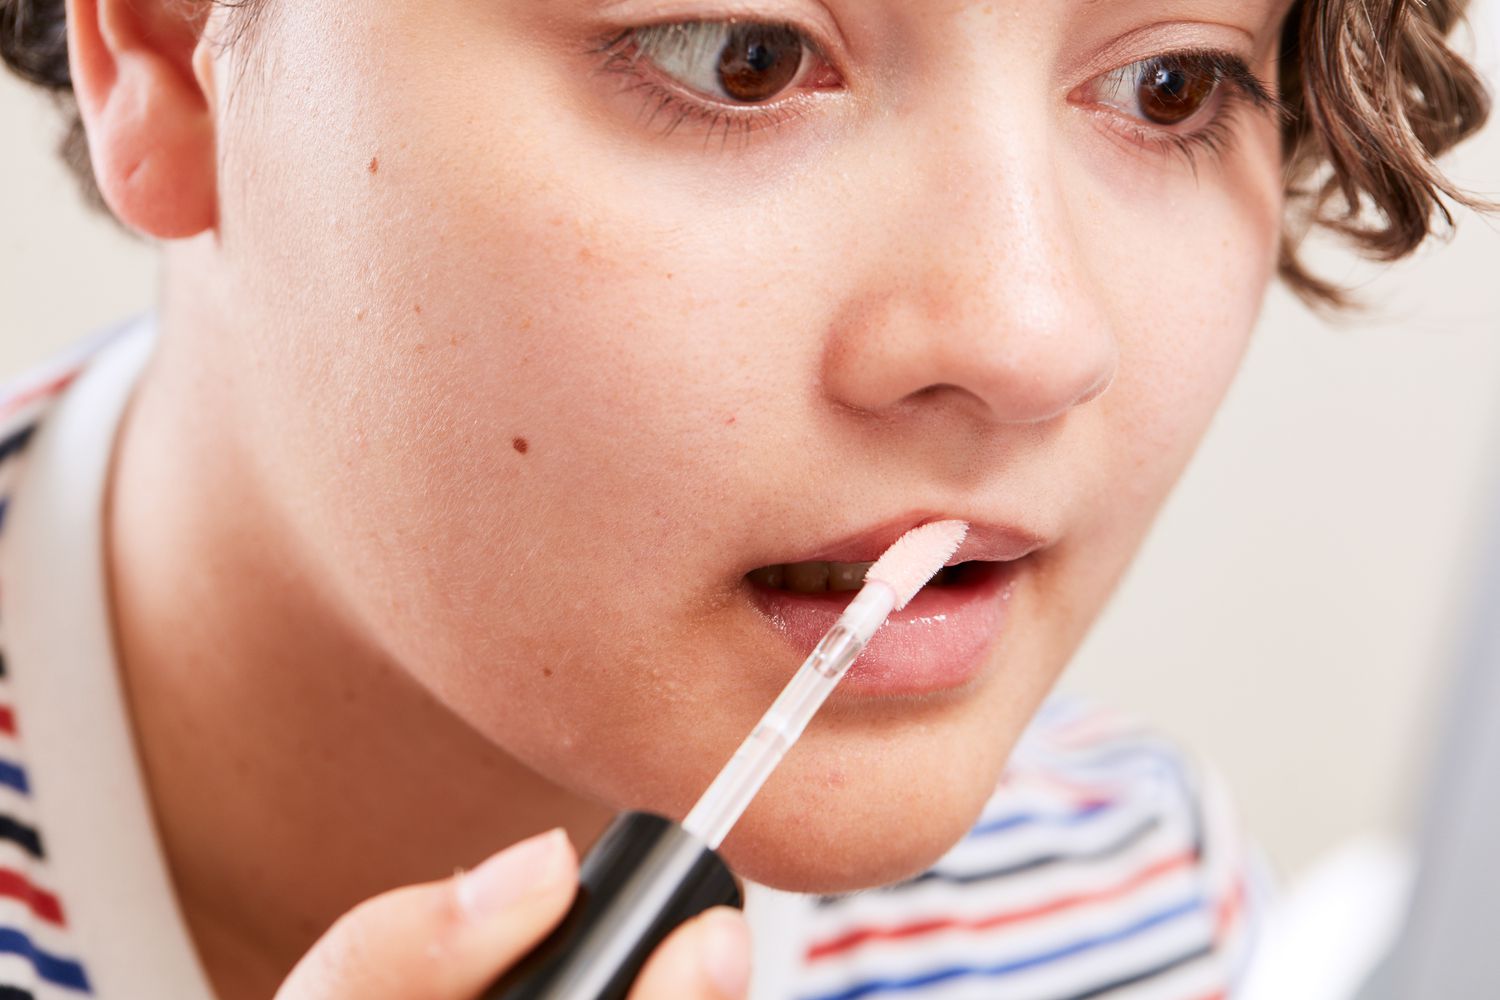 Homem aplicando brilho labial e. l. f. Cosmetics Lip Plumping Gloss nos lábios usando um aplicador